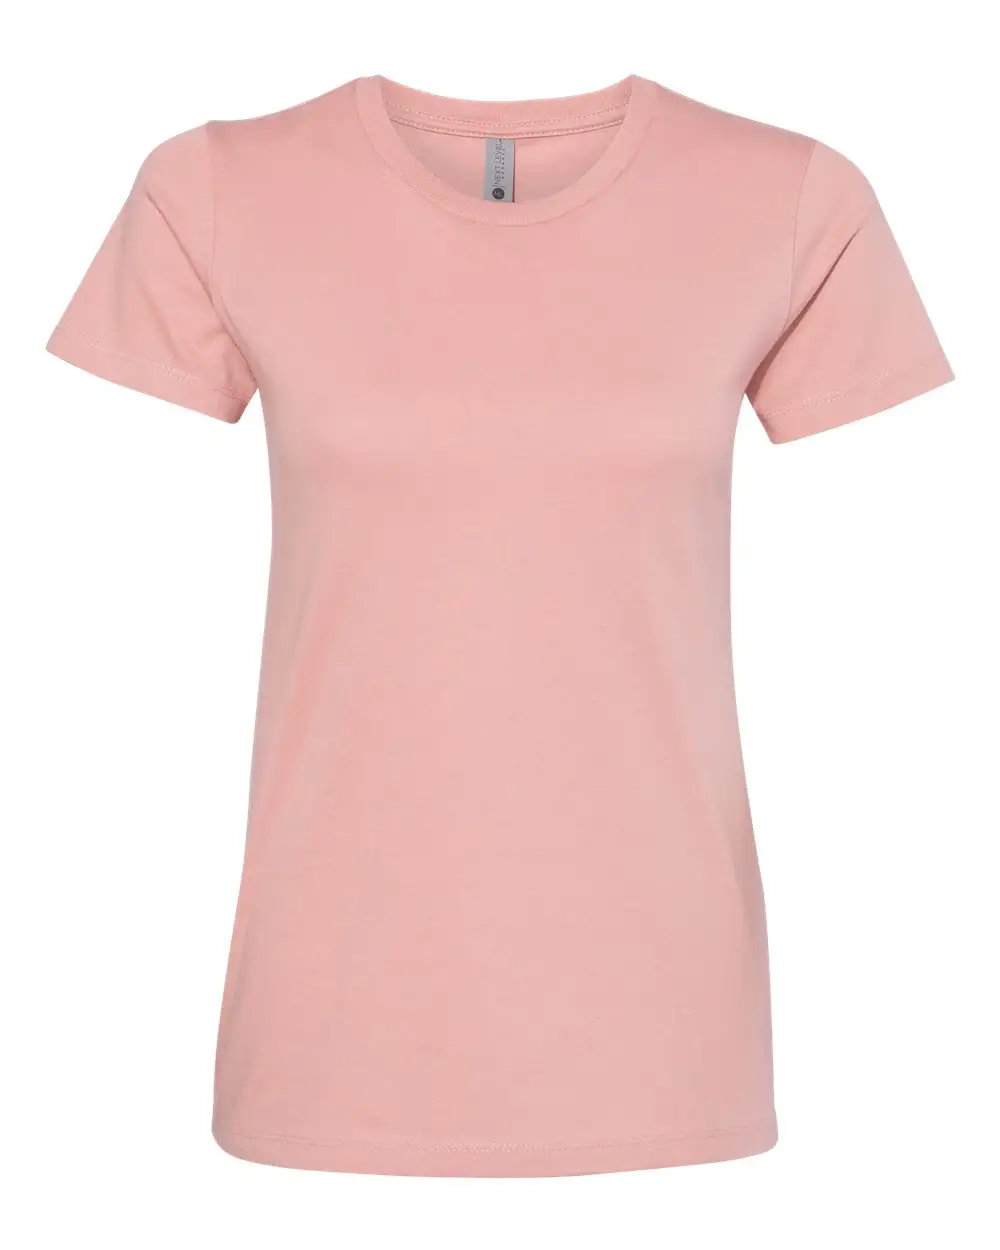 महिला टी शर्ट लंबी आस्तीन के चालक दल की गर्दन शर्ट मूल टी शर्ट, मूल टी ब्लाउज 65% रेयन 30% पॉलिएस्टर 5% महिलाओं के लिए स्पैन्डेक्स टी शर्ट